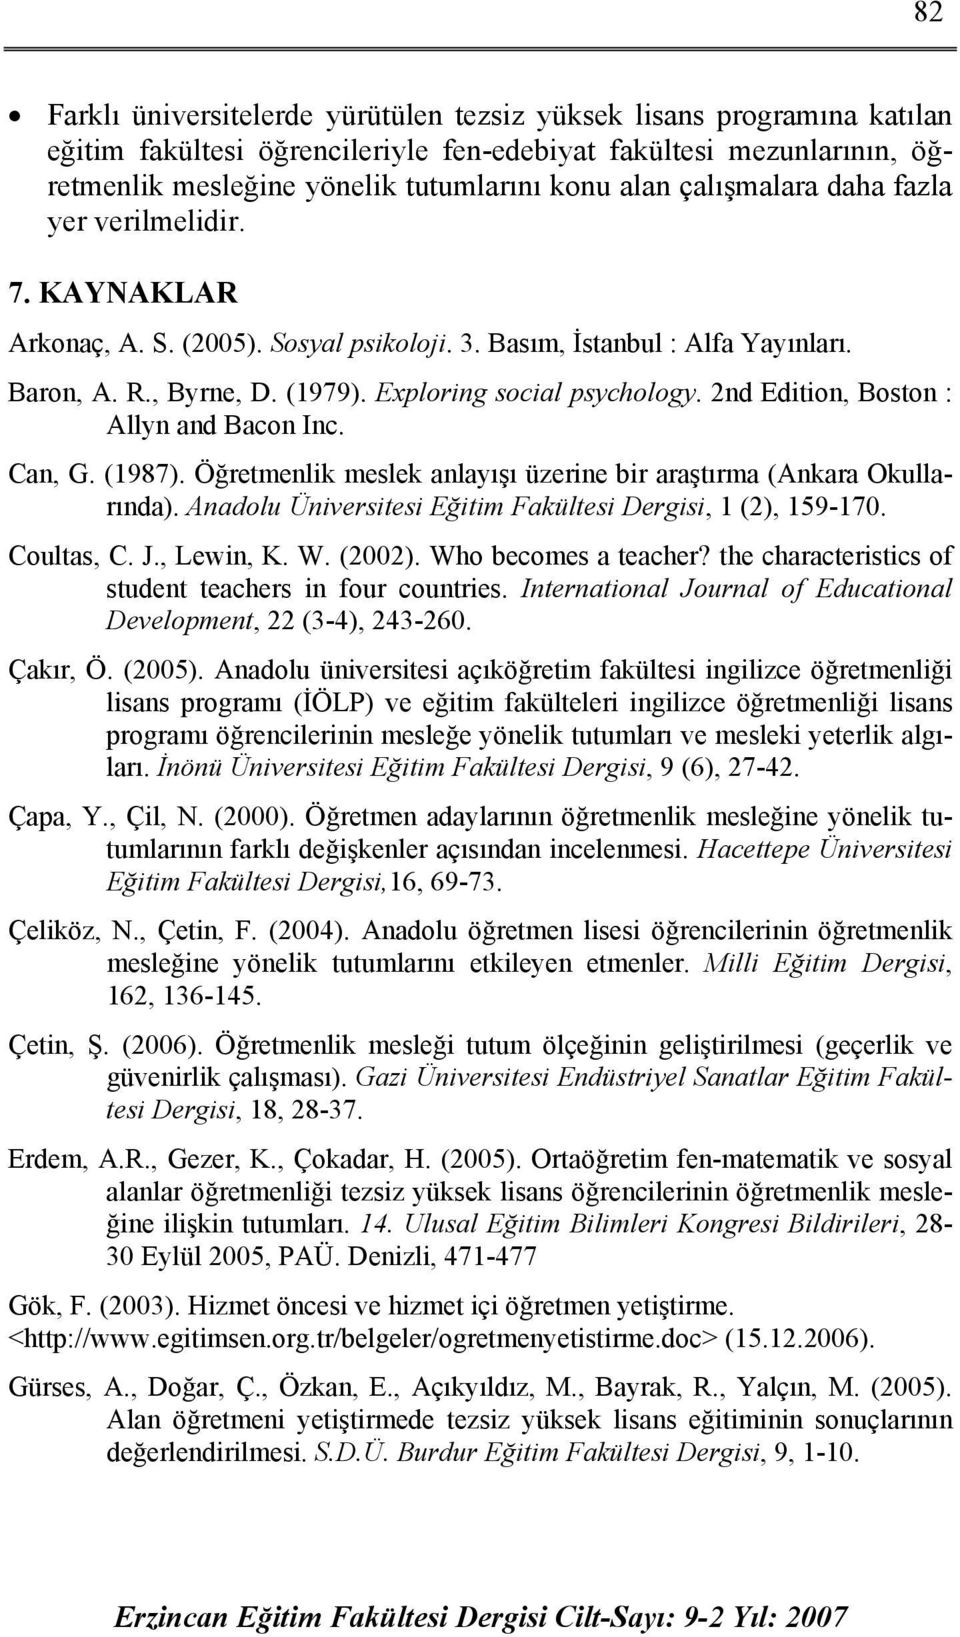 2nd Edition, Boston : Allyn and Bacon Inc. Can, G. (1987). Öğretmenlik meslek anlayışı üzerine bir araştırma (Ankara Okullarında). Anadolu Üniversitesi Eğitim Fakültesi Dergisi, 1 (2), 159-170.